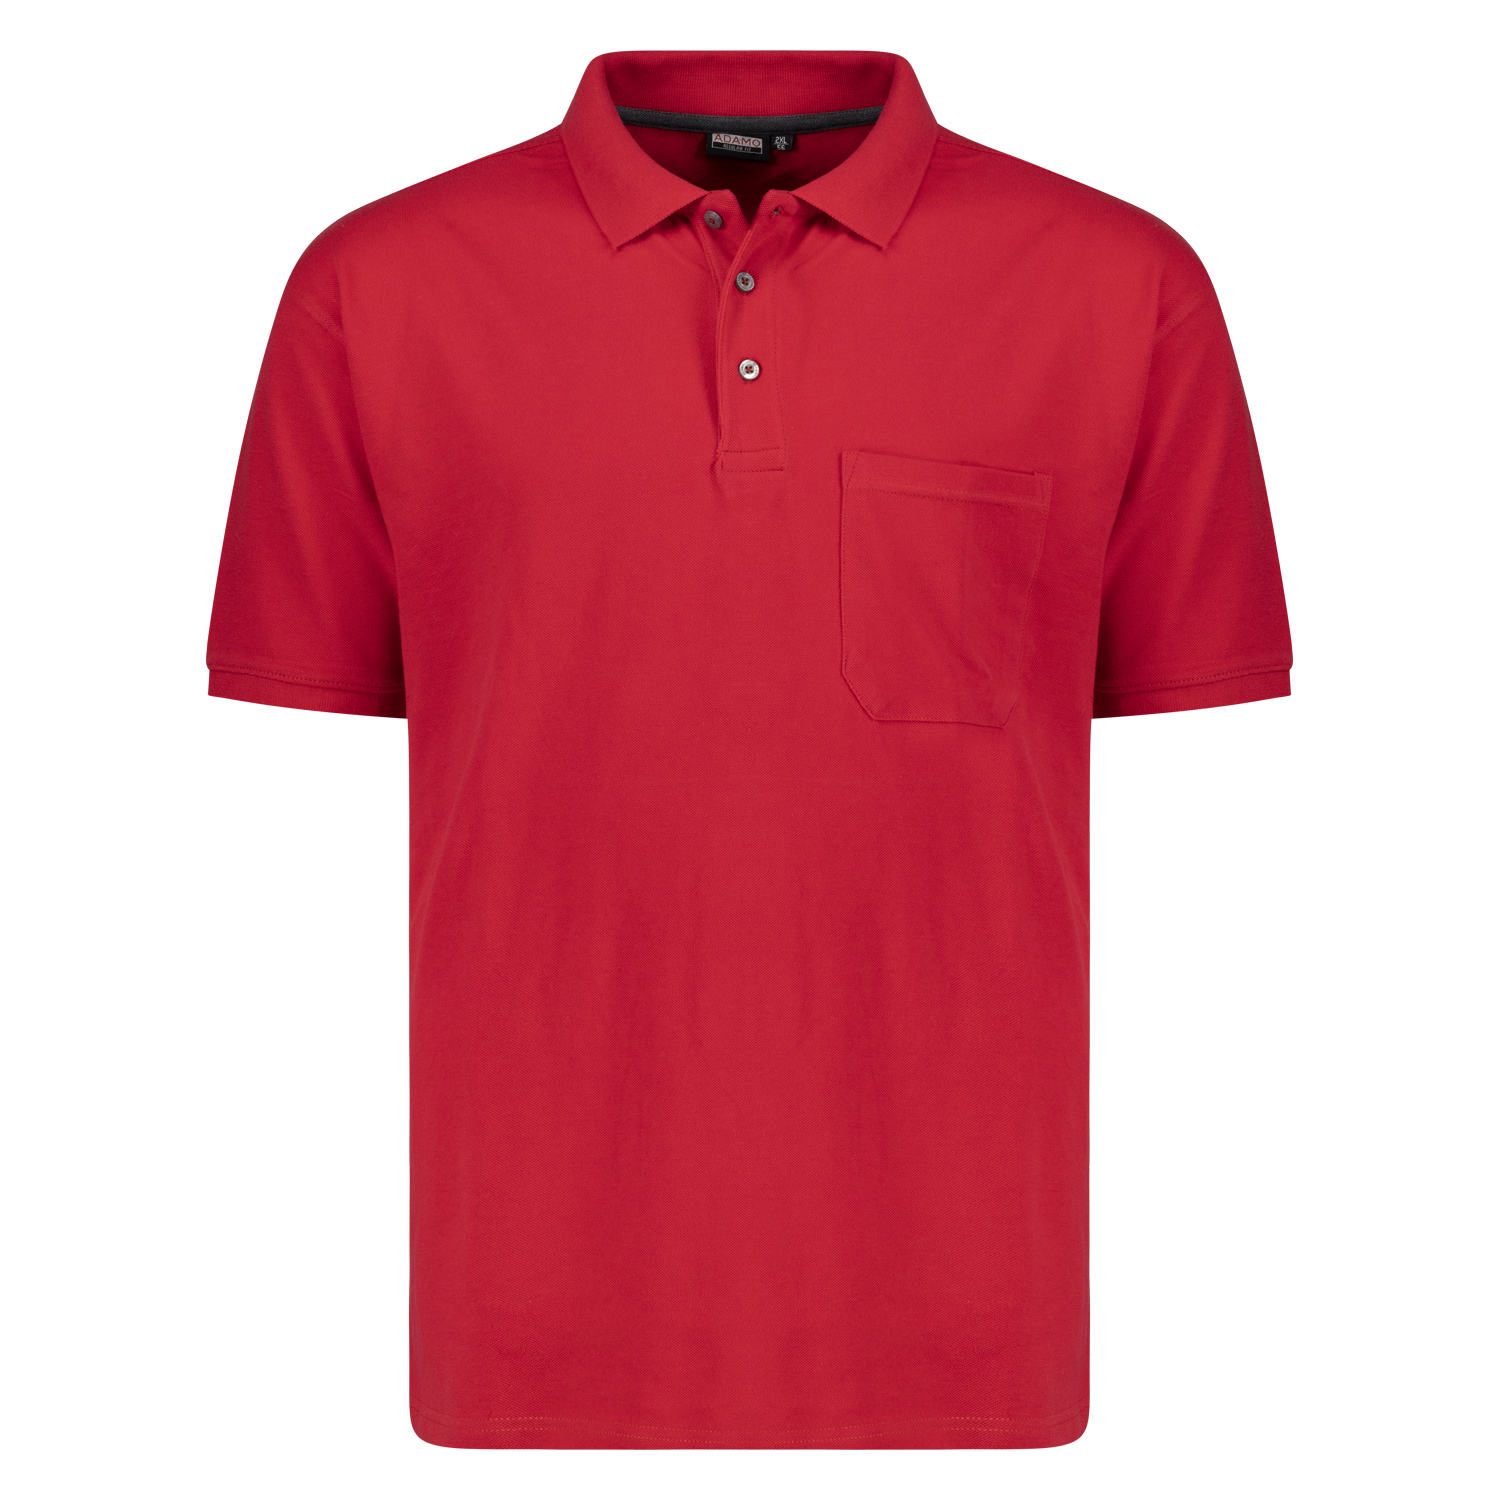 Herren Pique Poloshirt kurzarm Serie Klaas REGULAR FIT von Adamo rot in Übergrößen 2XL - 10XL